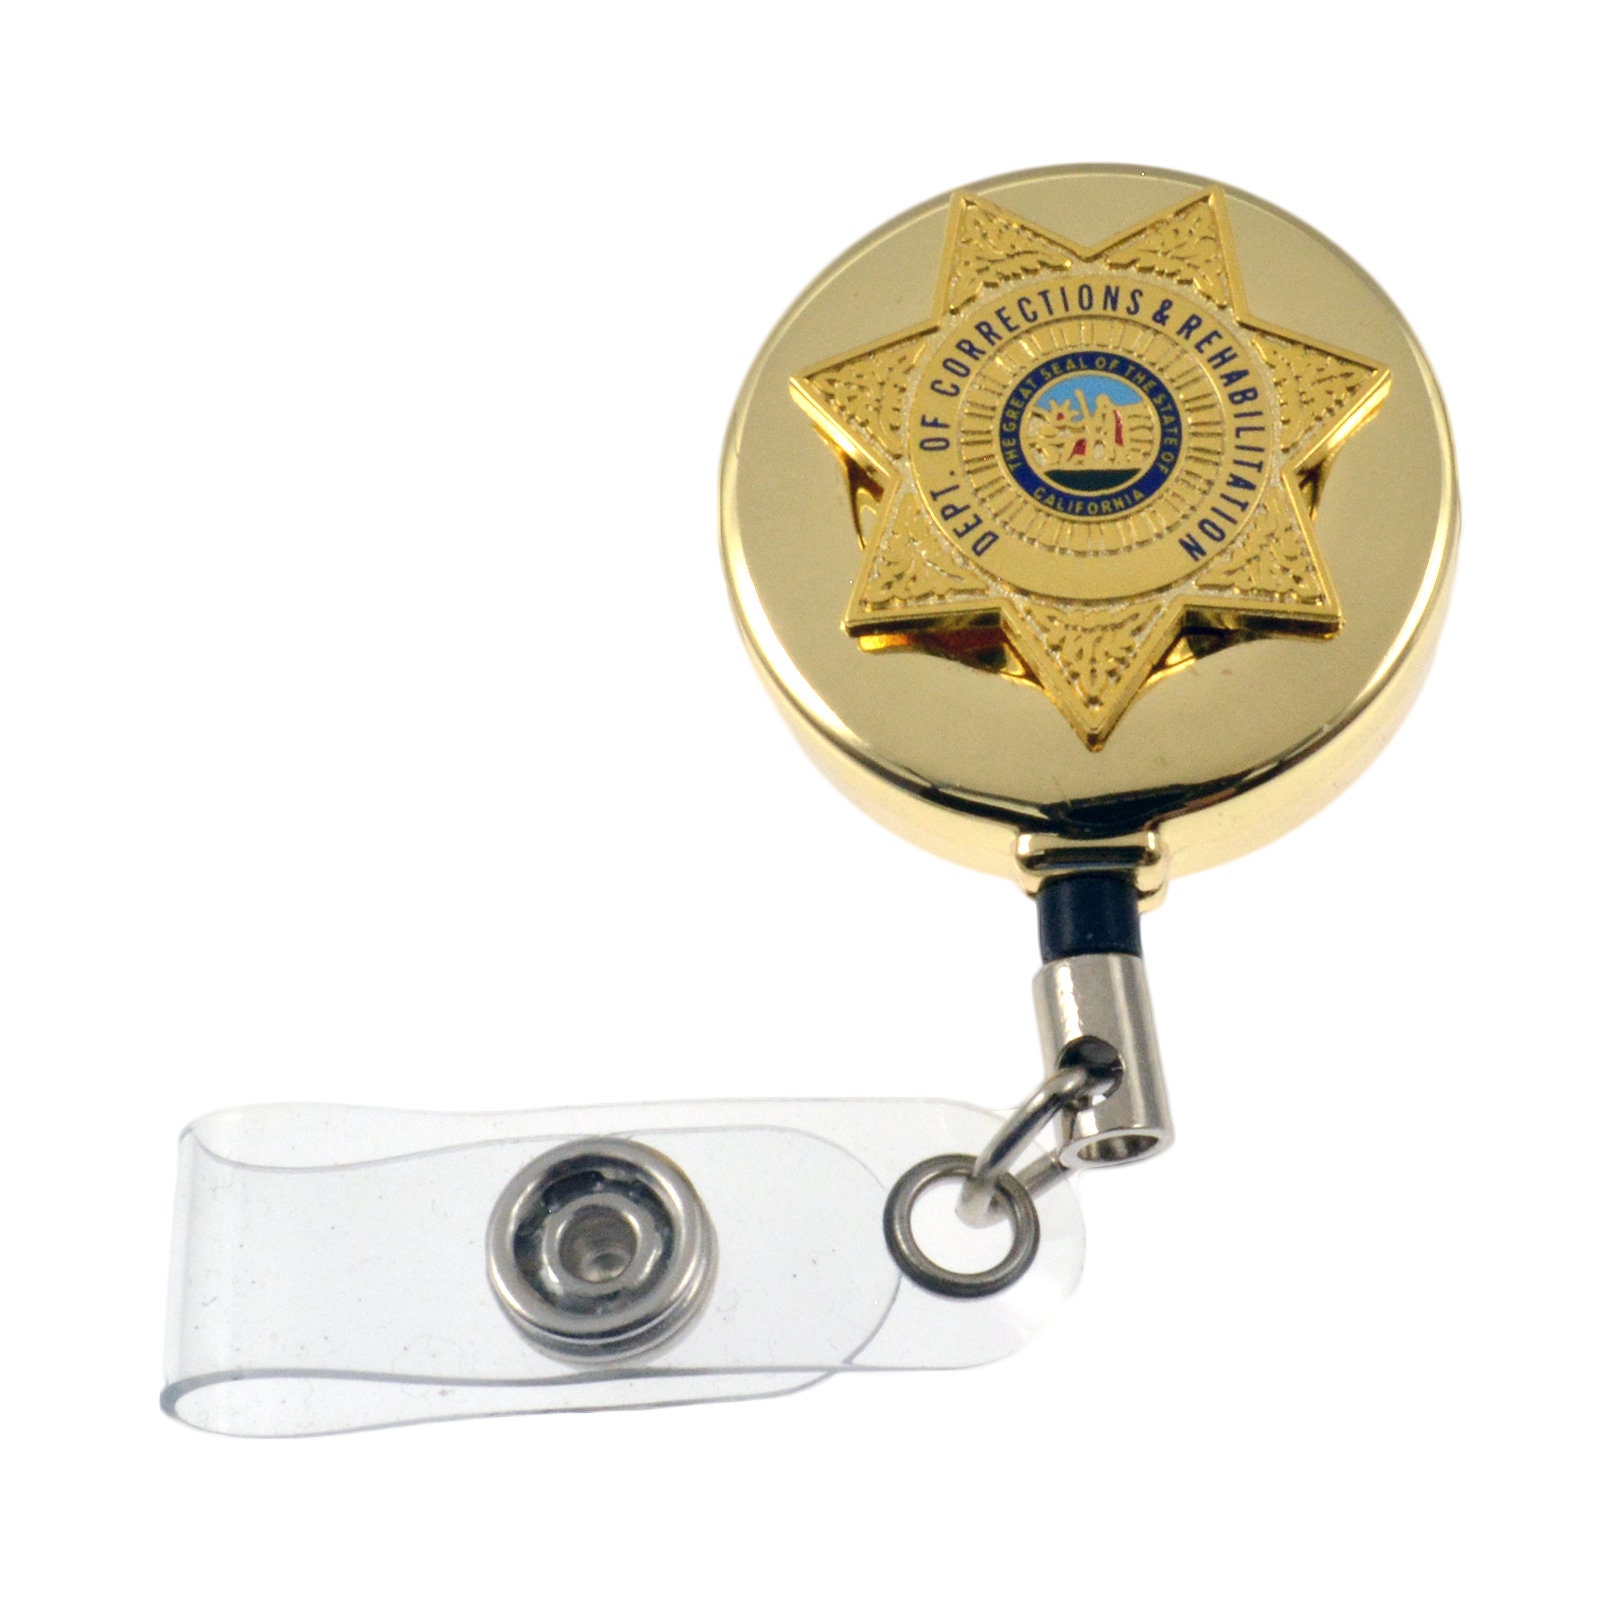 Buy DEA Seal Carabiner Retractable Badge Reel ID Holder Key-bak